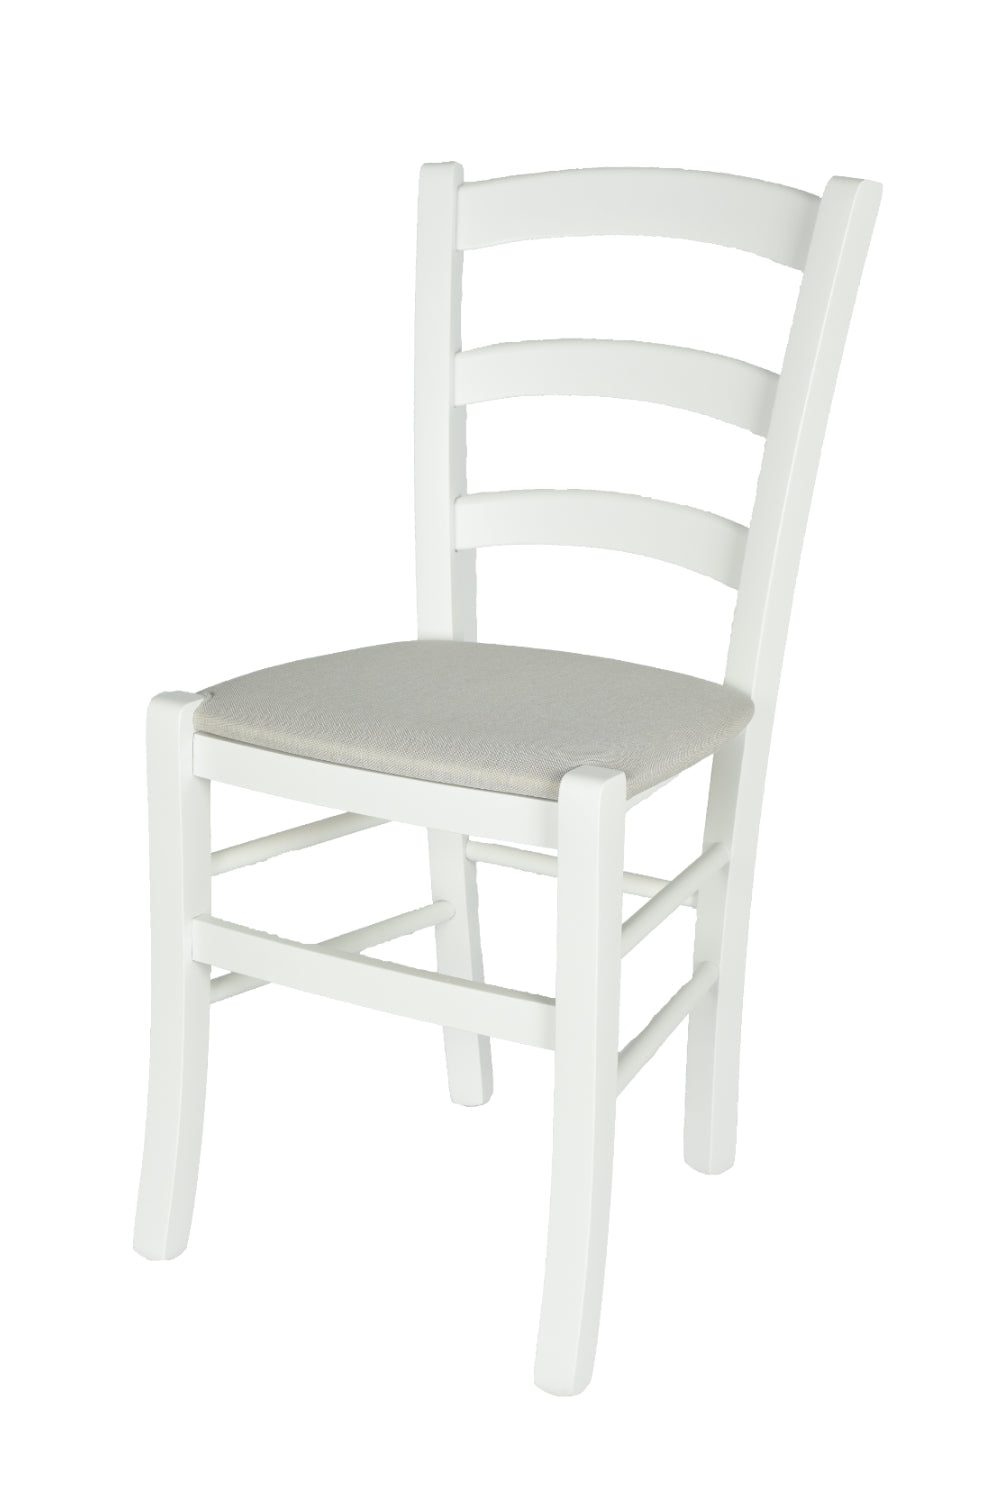 Laccato Bianco/ Tessuto Bianco Ostrica/Set 1 sedia